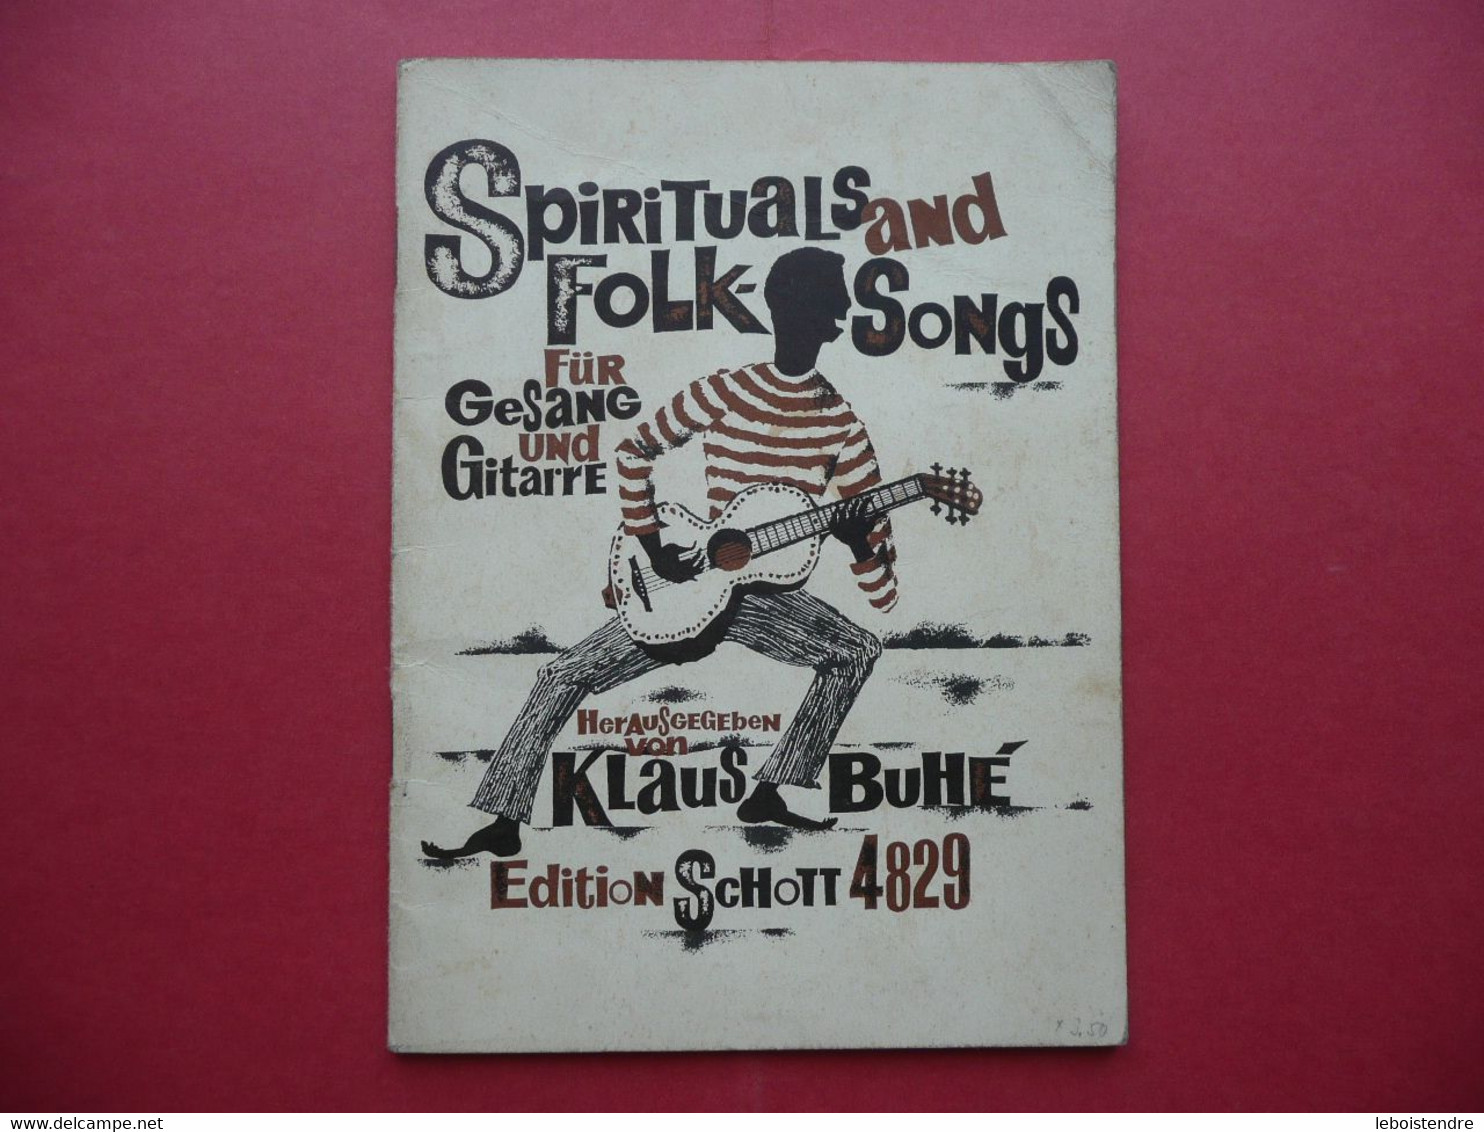 SPIRITUALS AND FOLK SONGS FUR GESANG UND GUITARRE HERAUSGEGEBEN VON KLAUS BUHE EDITION SCHOTT 4829 PARTITIONS - Musik